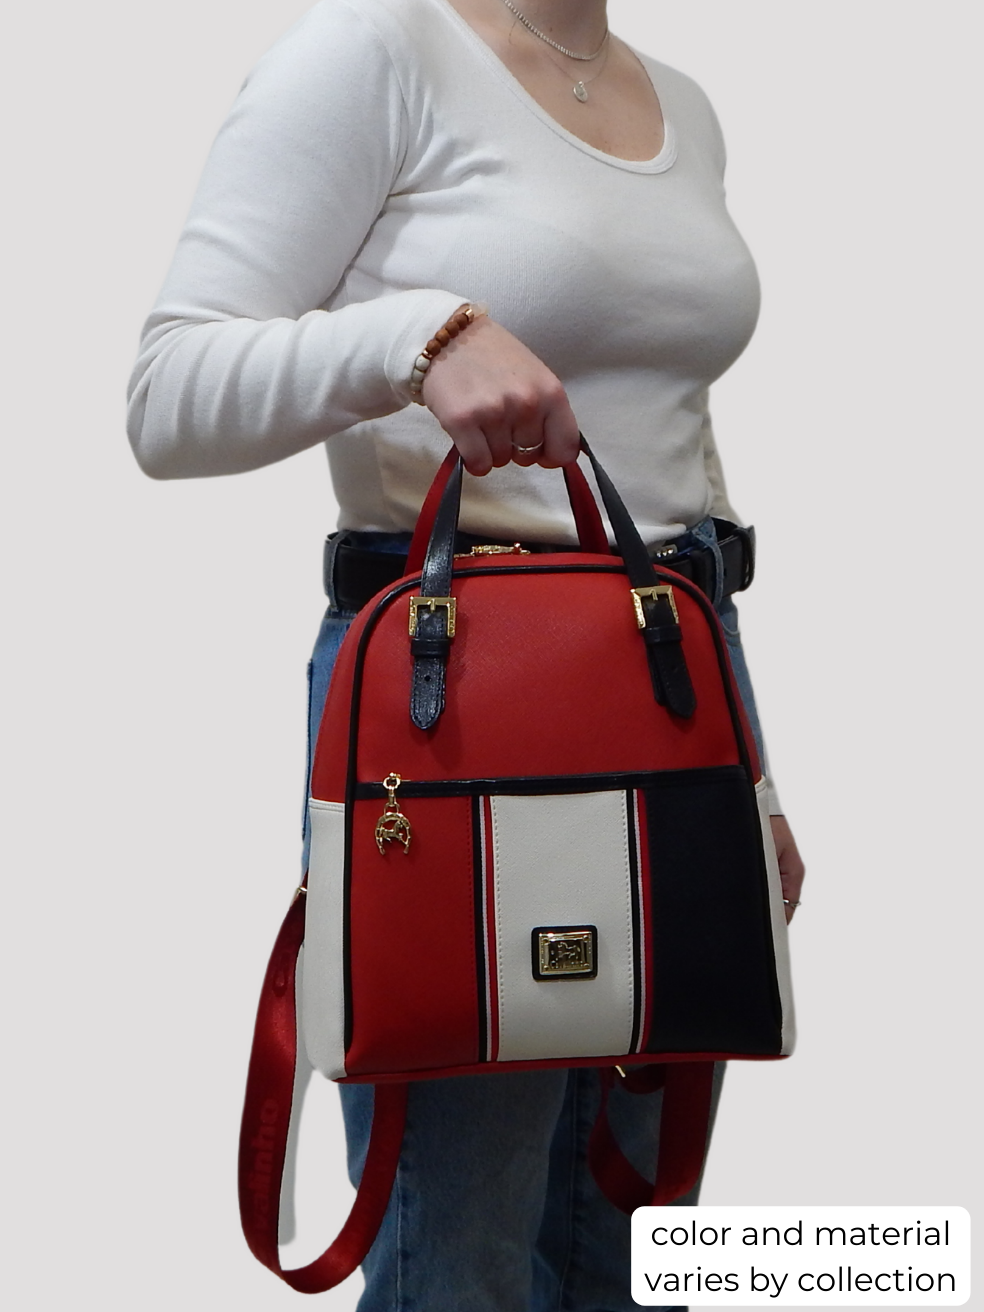 #color_ Navy White Red | Cavalinho Prestige Backpack - Navy White Red - bodyshot_0519_1_e161610f-817f-4495-9283-60d8927e9e64